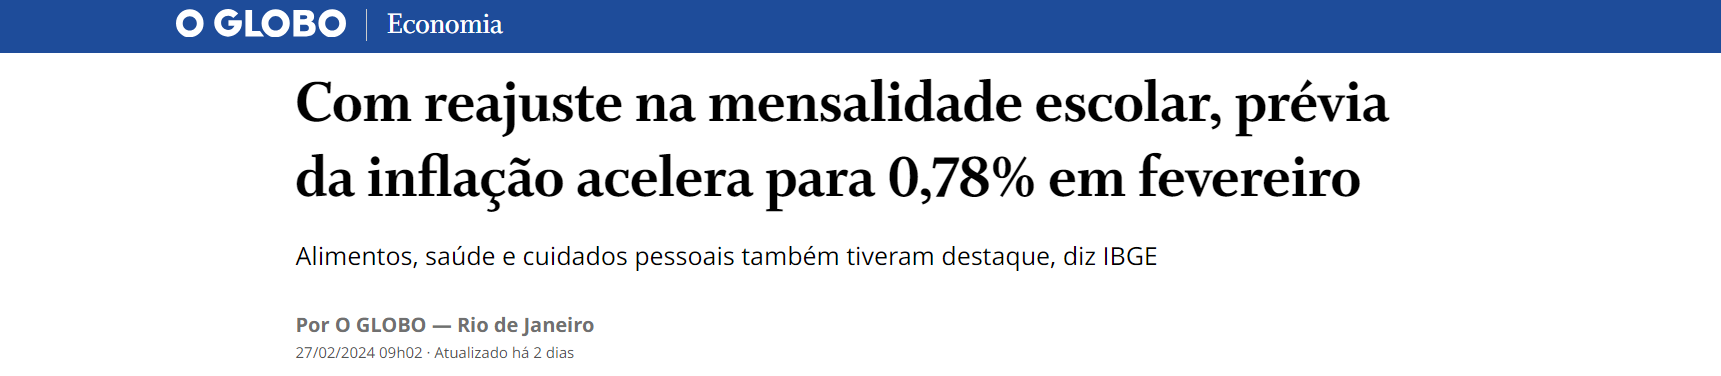 Com reajuste na mensalidade escolar, prévia da inflação acelera para 0,78% em fevereiro - O Globo